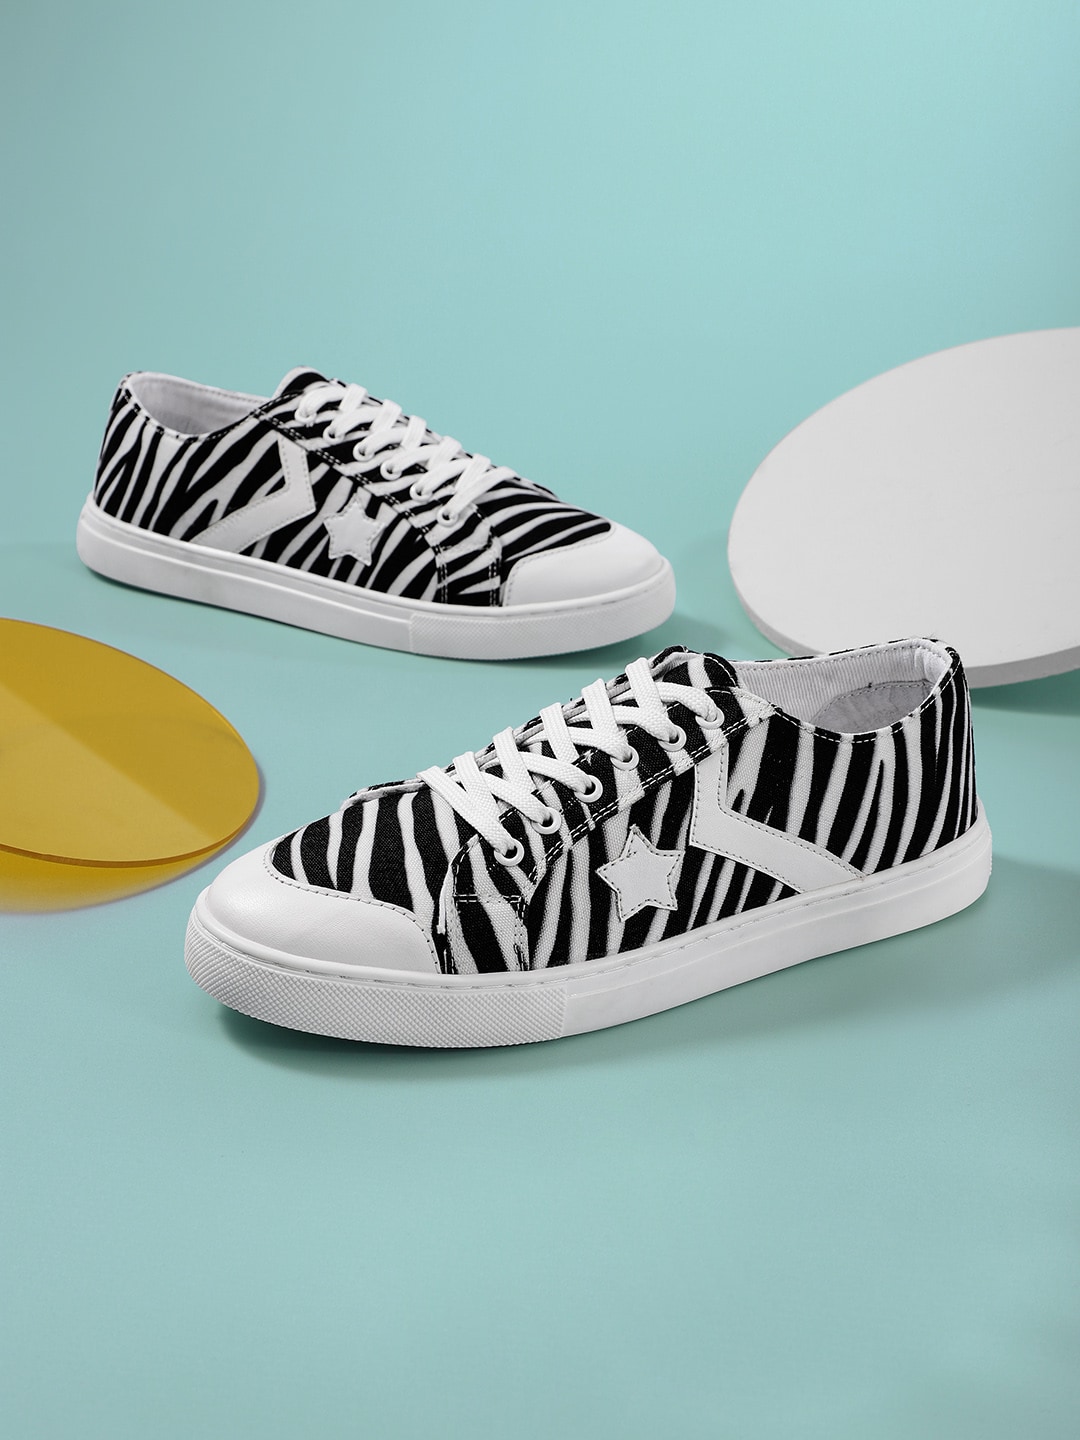 Kook N Keech Women White & Black Zebra Printed Sneakers Price in India